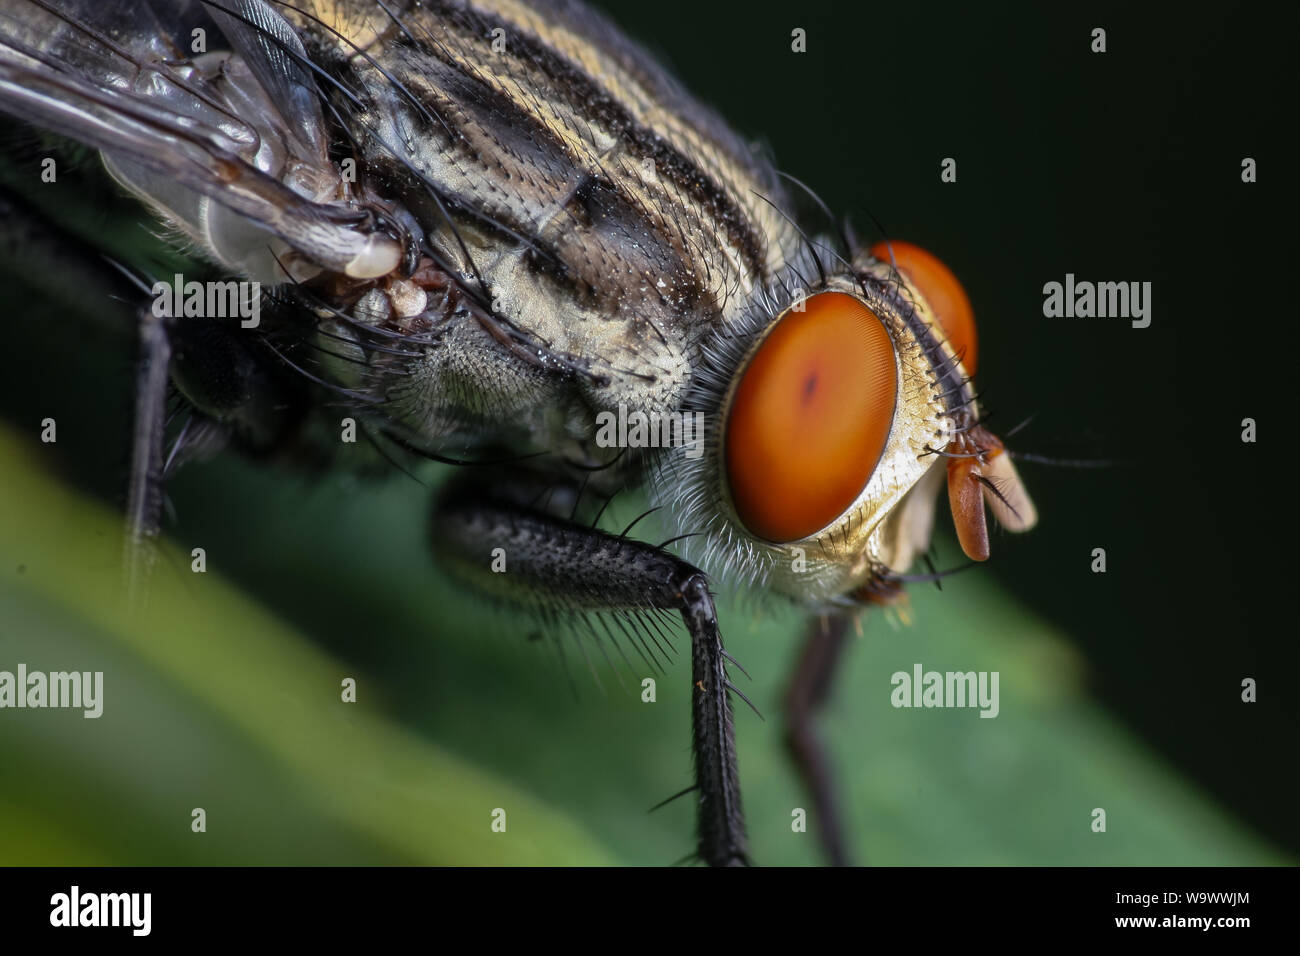 Fort agrandissement close-up d'un jardin commun fly, montrant la tête et les yeux d'insectes dans les détails Banque D'Images